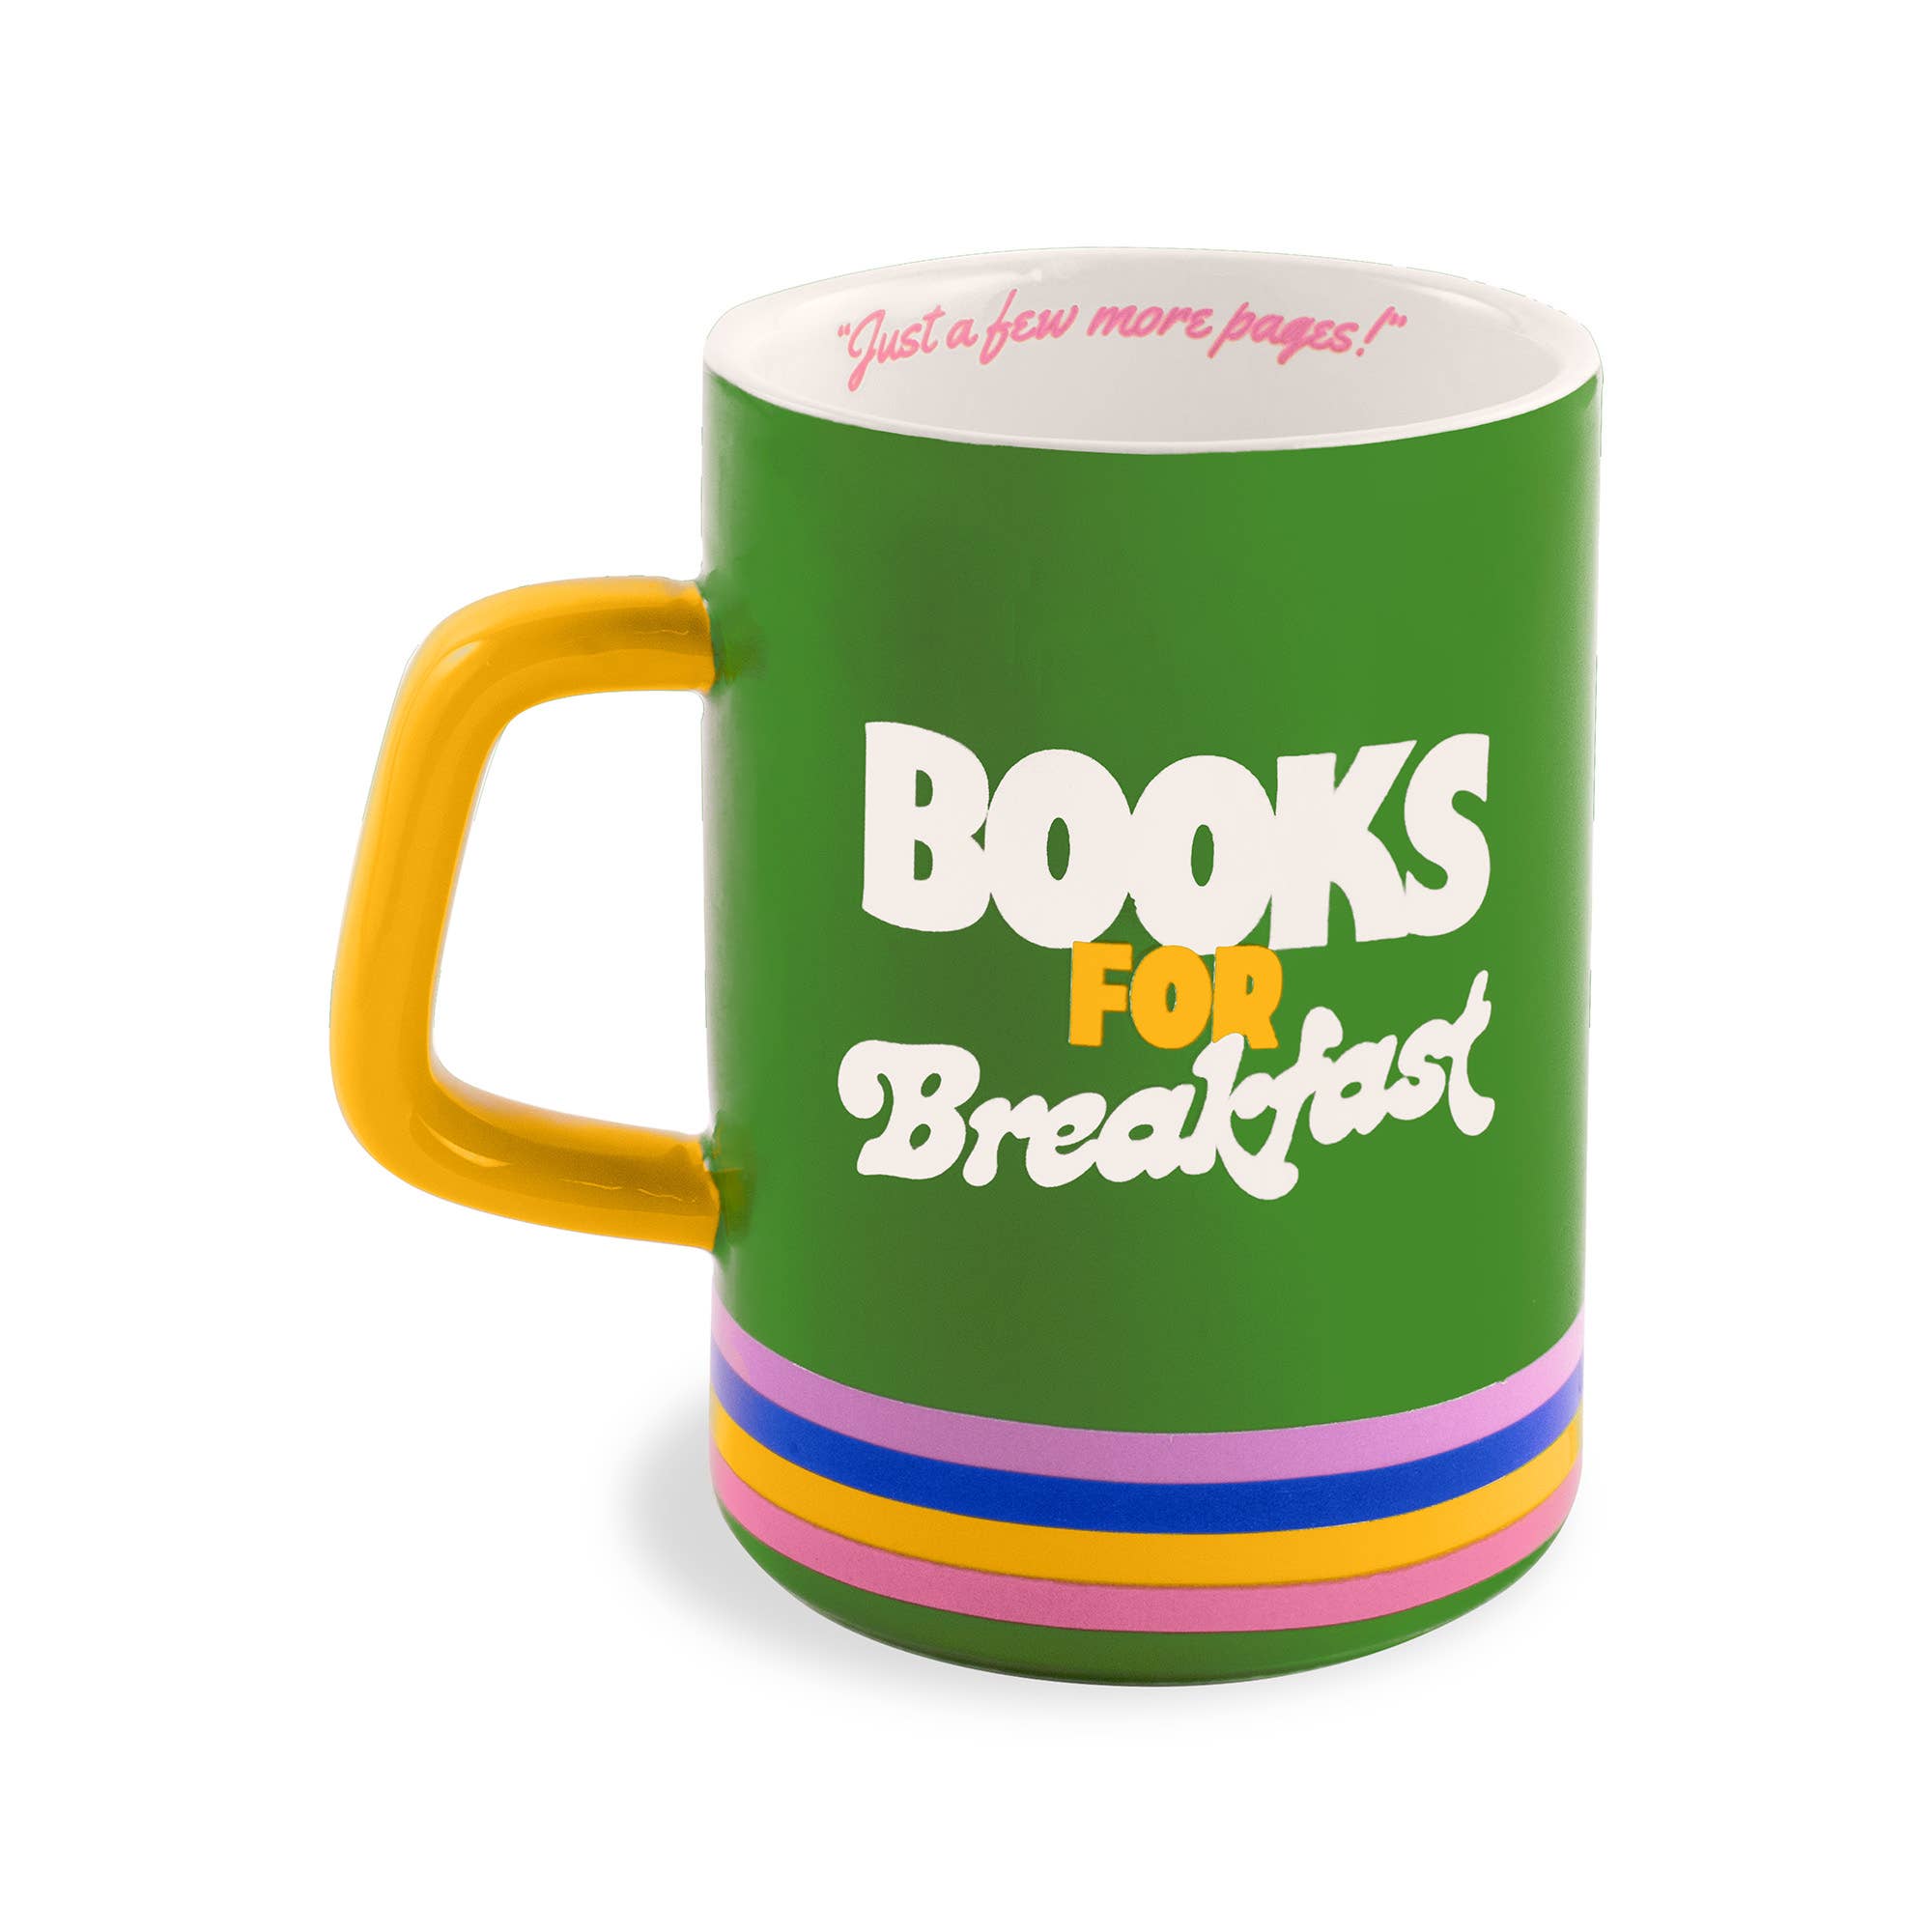 "Books for Breakfast" Hot Stuff Ceramic Mug